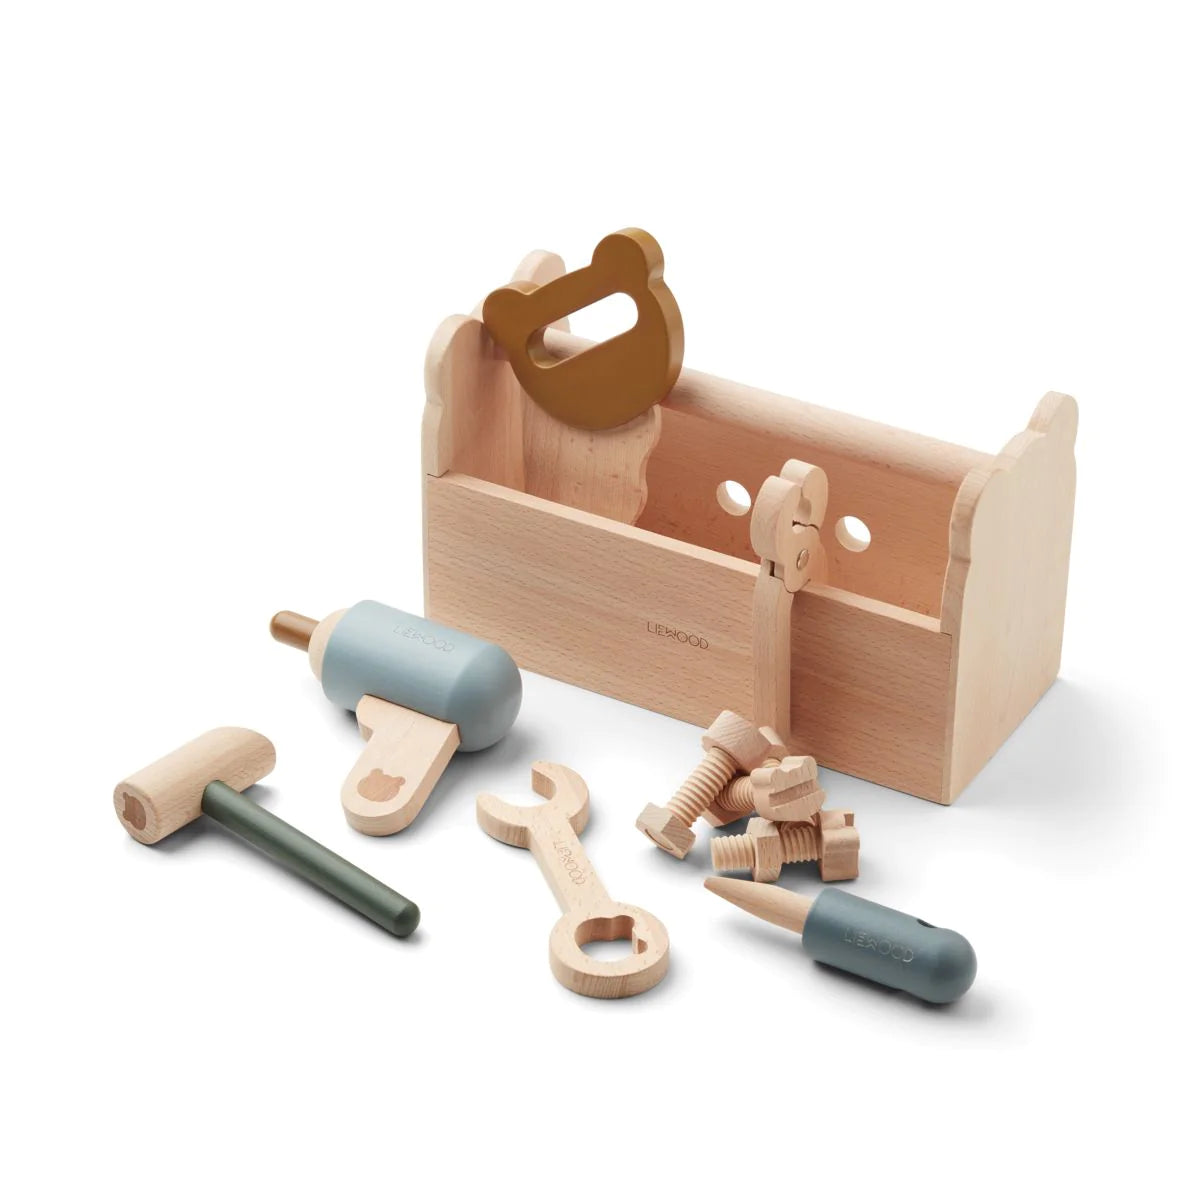 Liewood - Luigi tool set